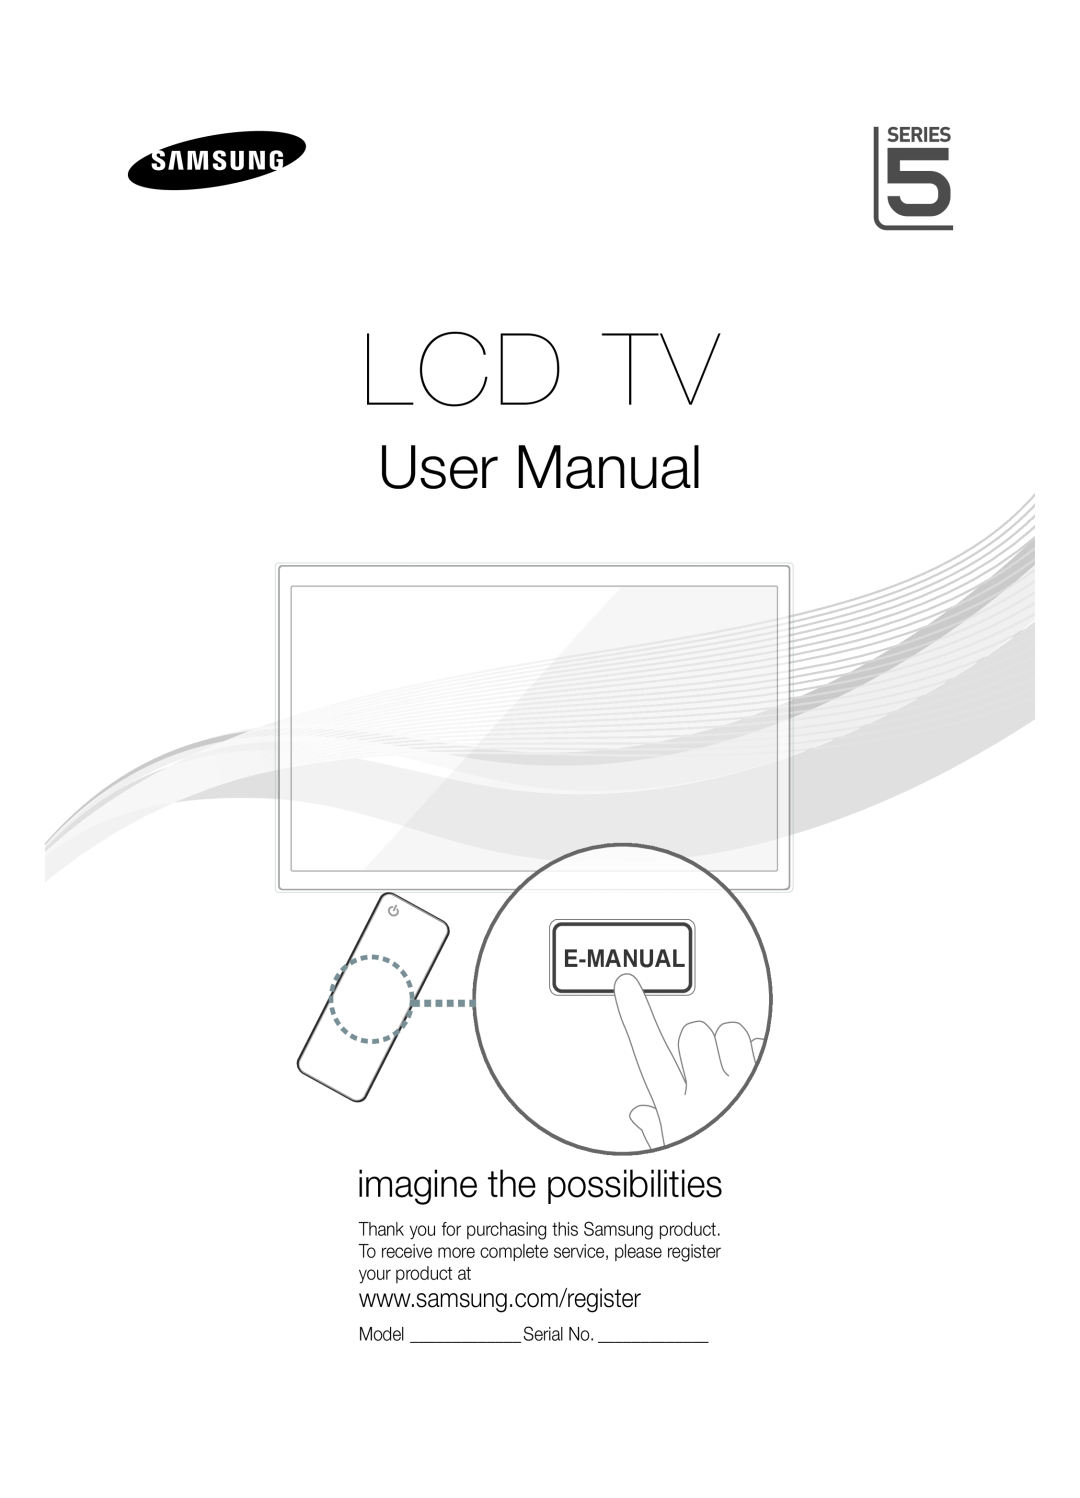 Samsung Series 5 user manual Model Serial No, Lcd Tv, User Manual, imagine the possibilities, E-Manual 